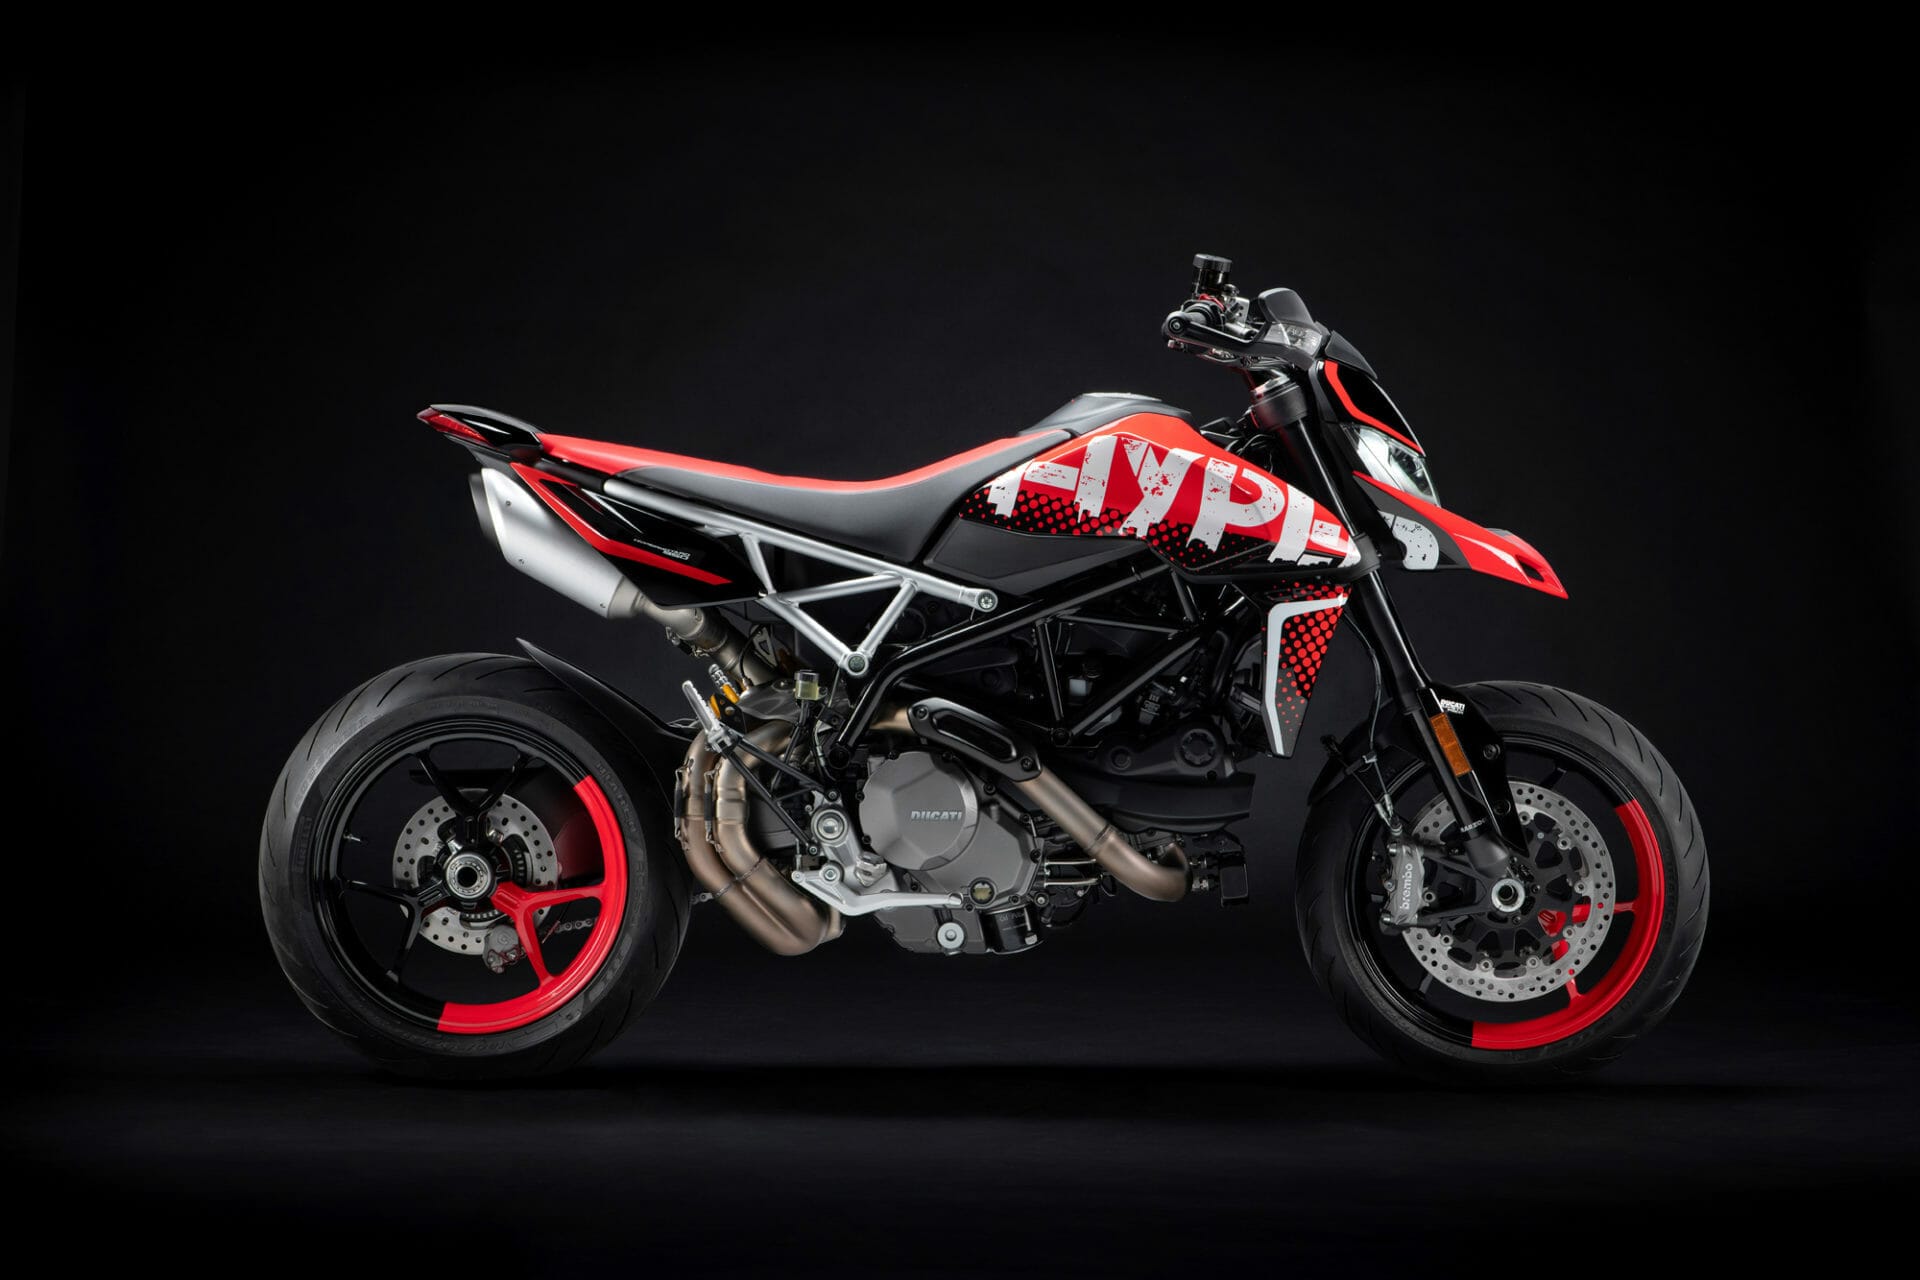 Ducati Hypermotard 950 RVE vorgestellt
- auch in der MOTORRAD NACHRICHTEN APP